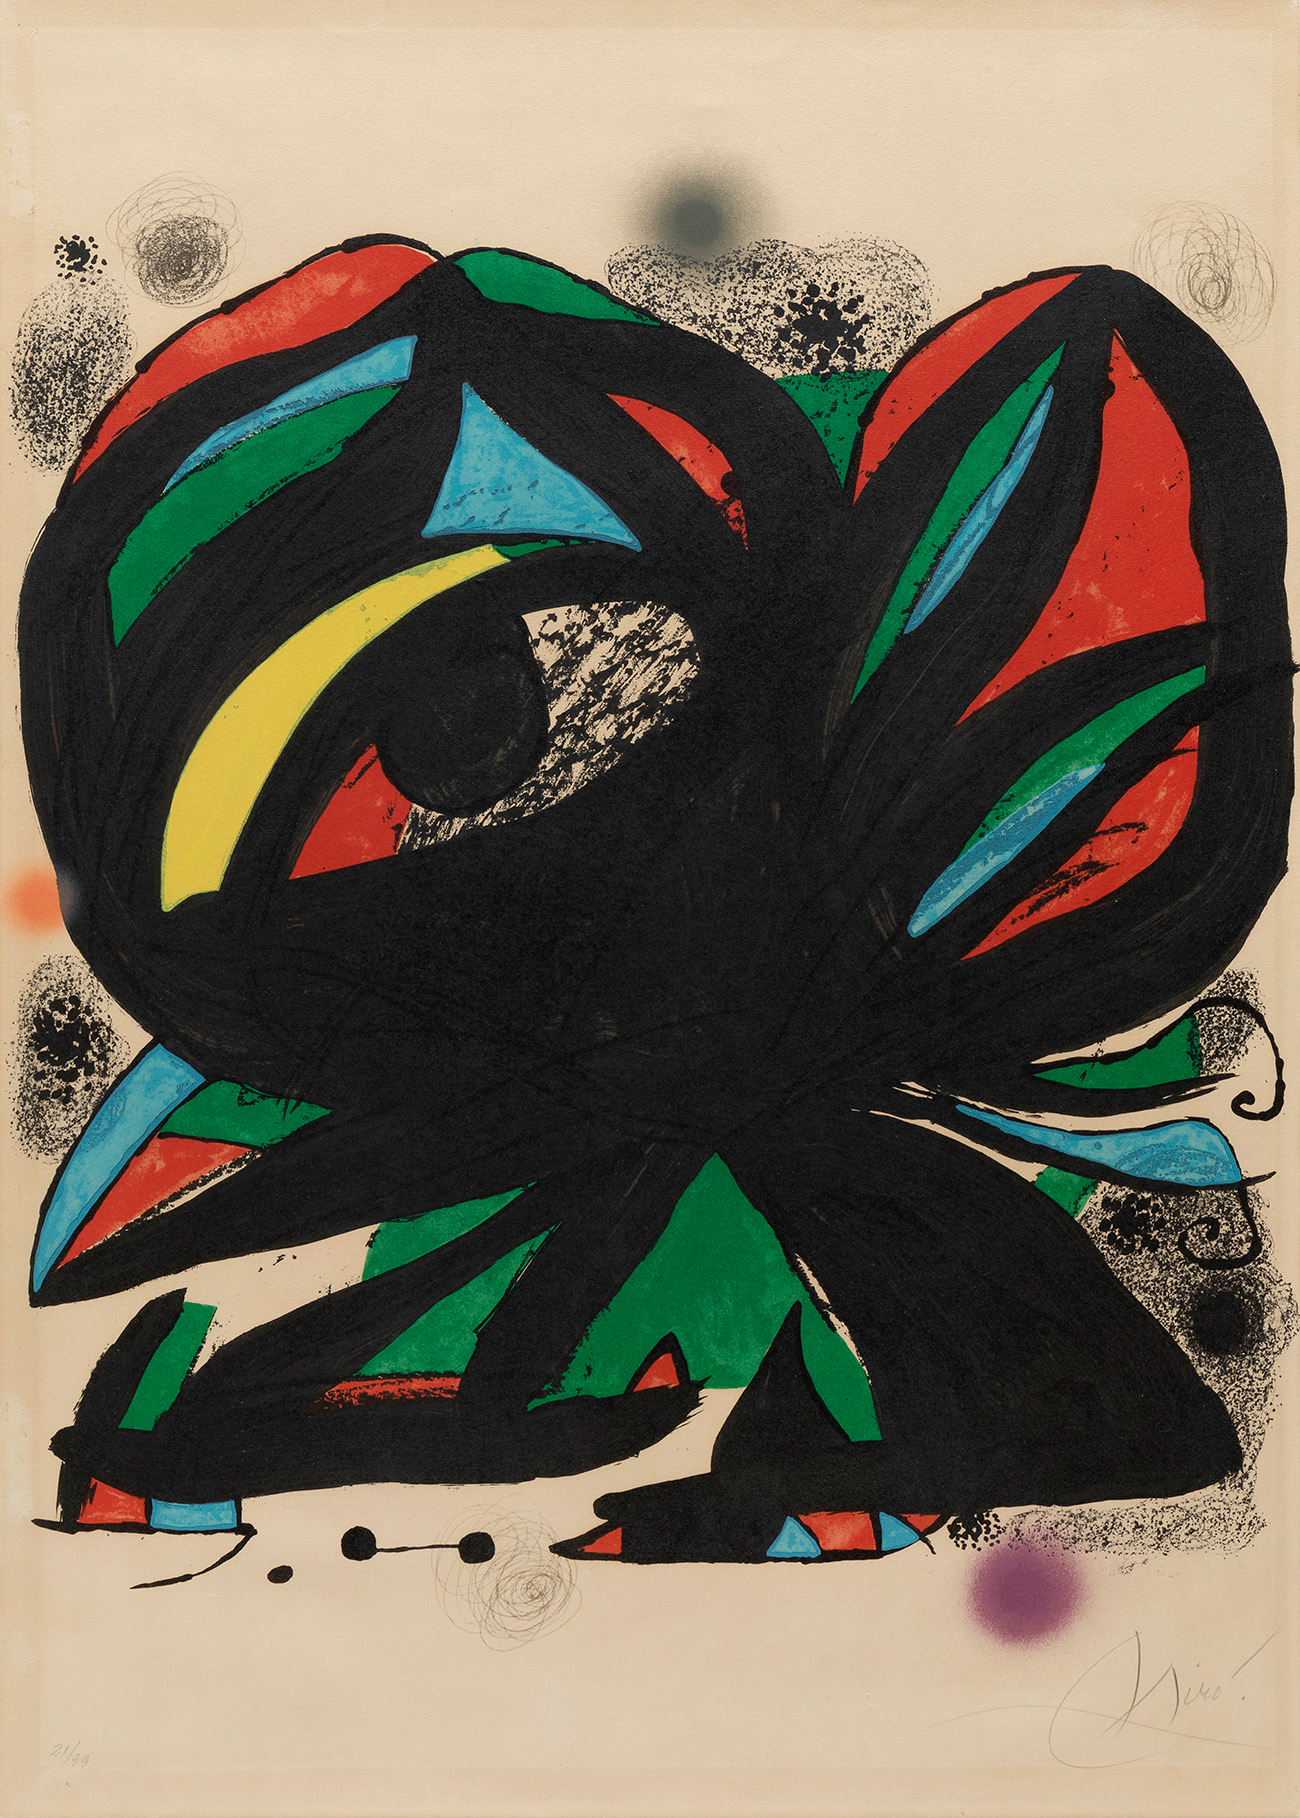 JOAN MIRÓ I FERRÀ (Barcelona, 1893 - Palma de Mallorca, 1983)."Fundació Joan Miró", 1975.Lithograph,